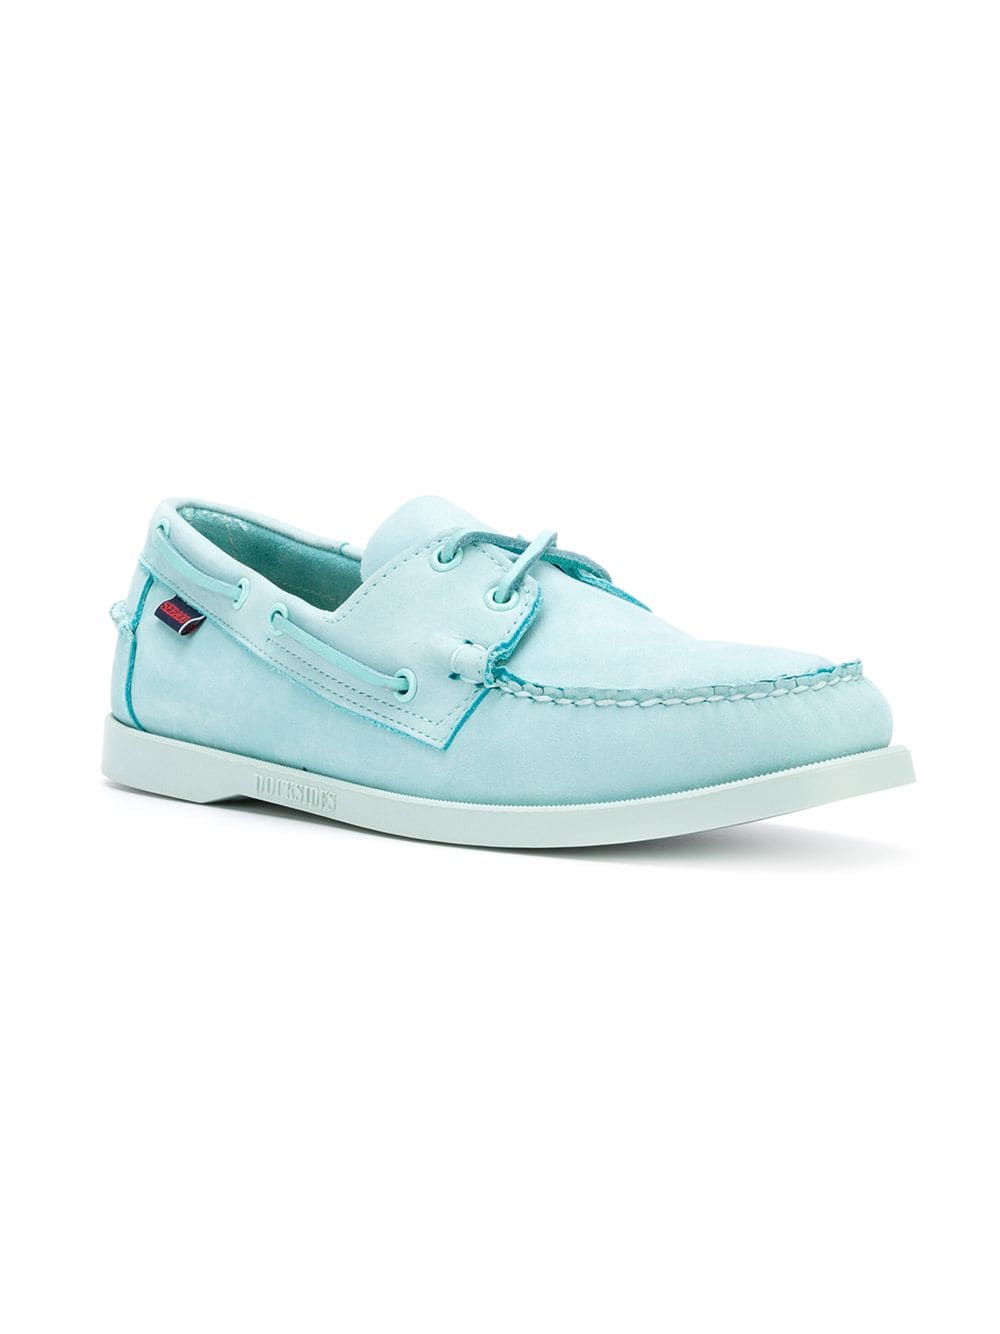 Sebago Docksides Zapatos náuticos de nobuck azul claro hombres NW / OB | eBay